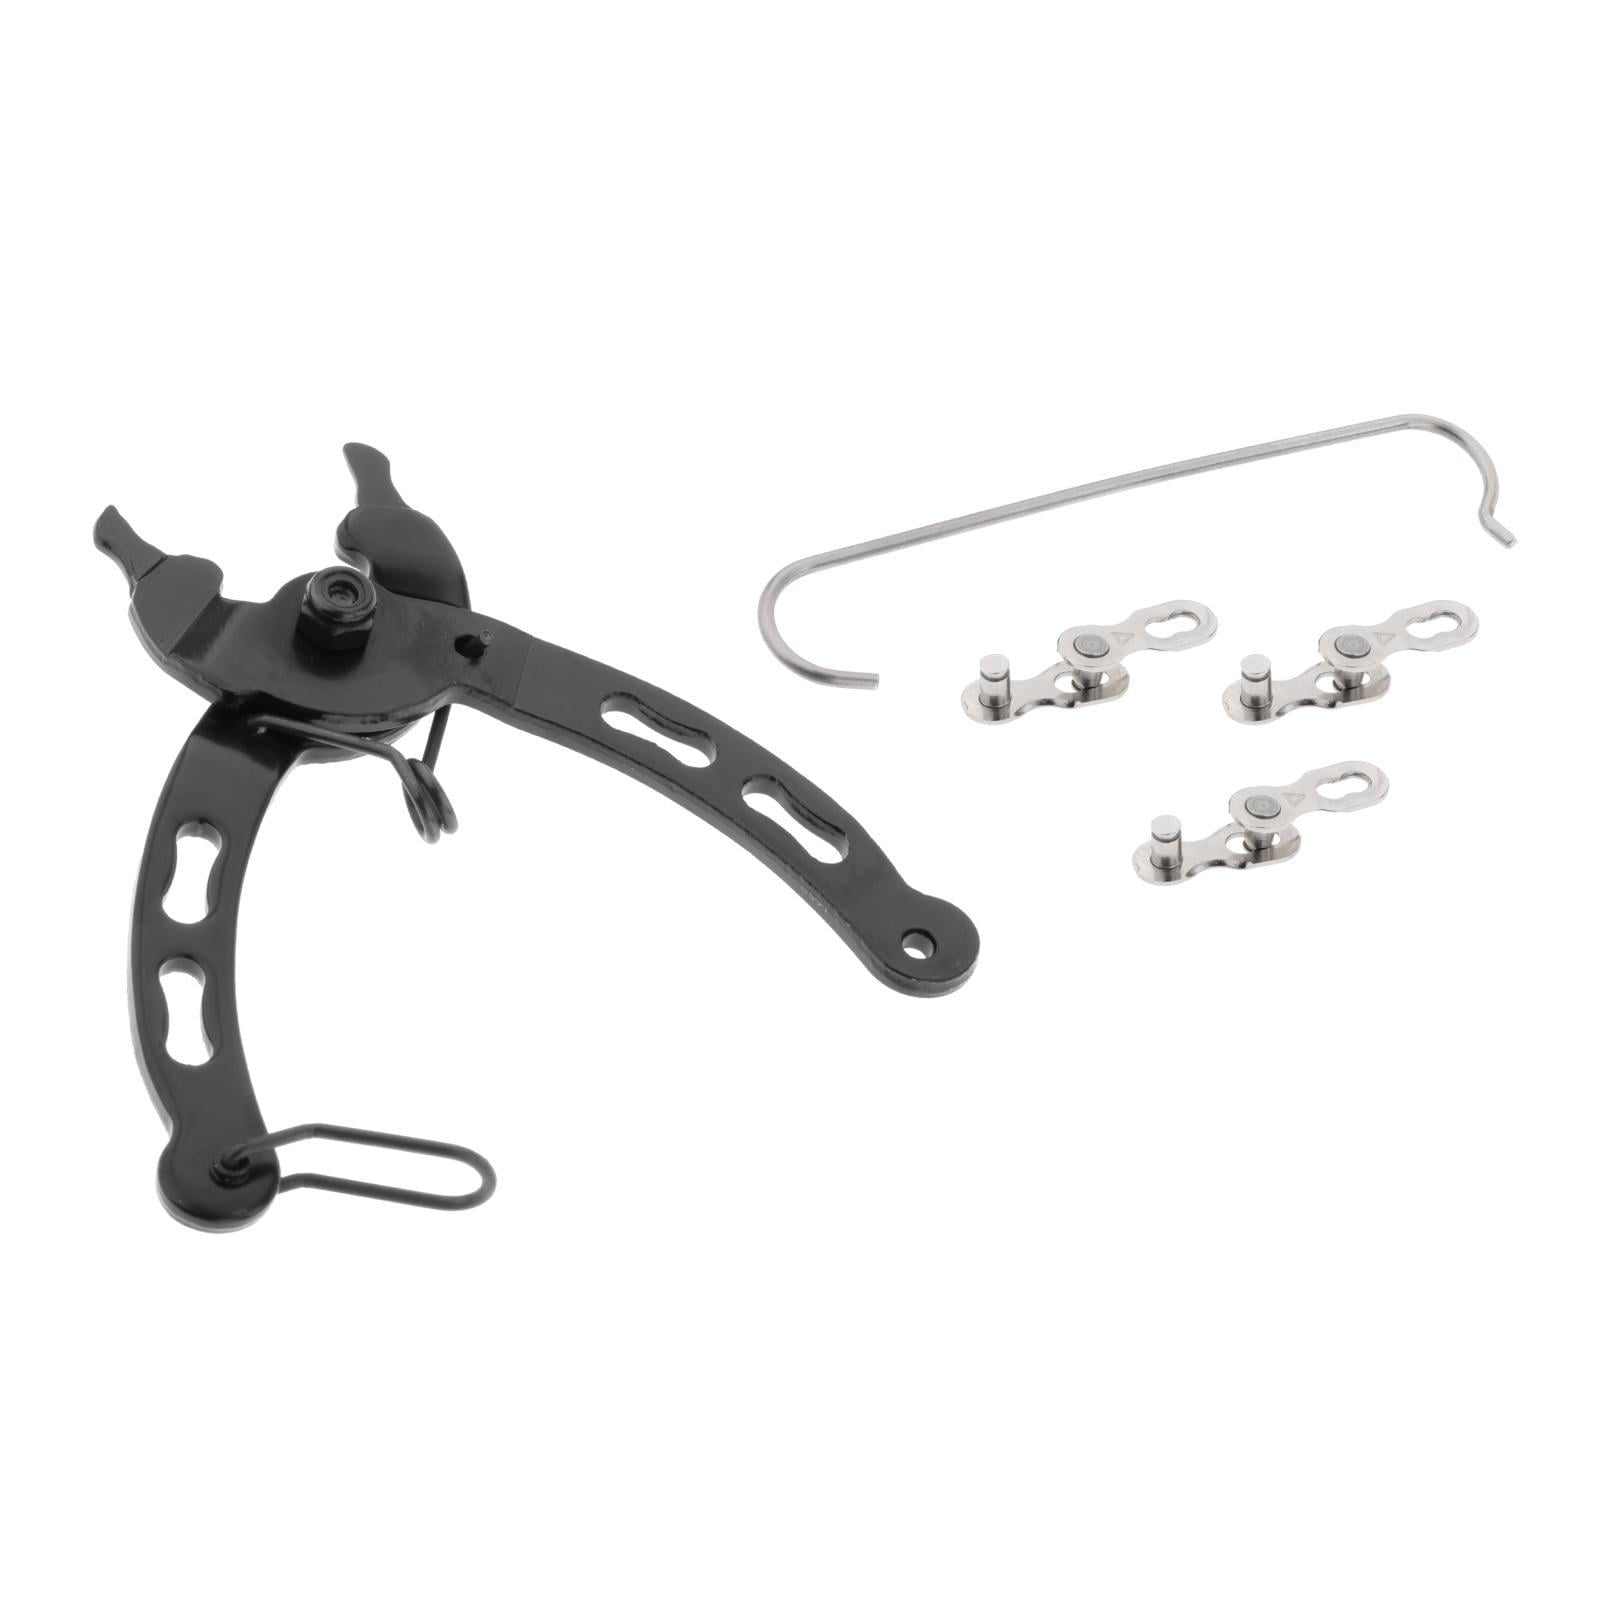 6 Shop Tools Bicycle Chain Repair Kit Bike Link Plier Breaker Splitter Tool 